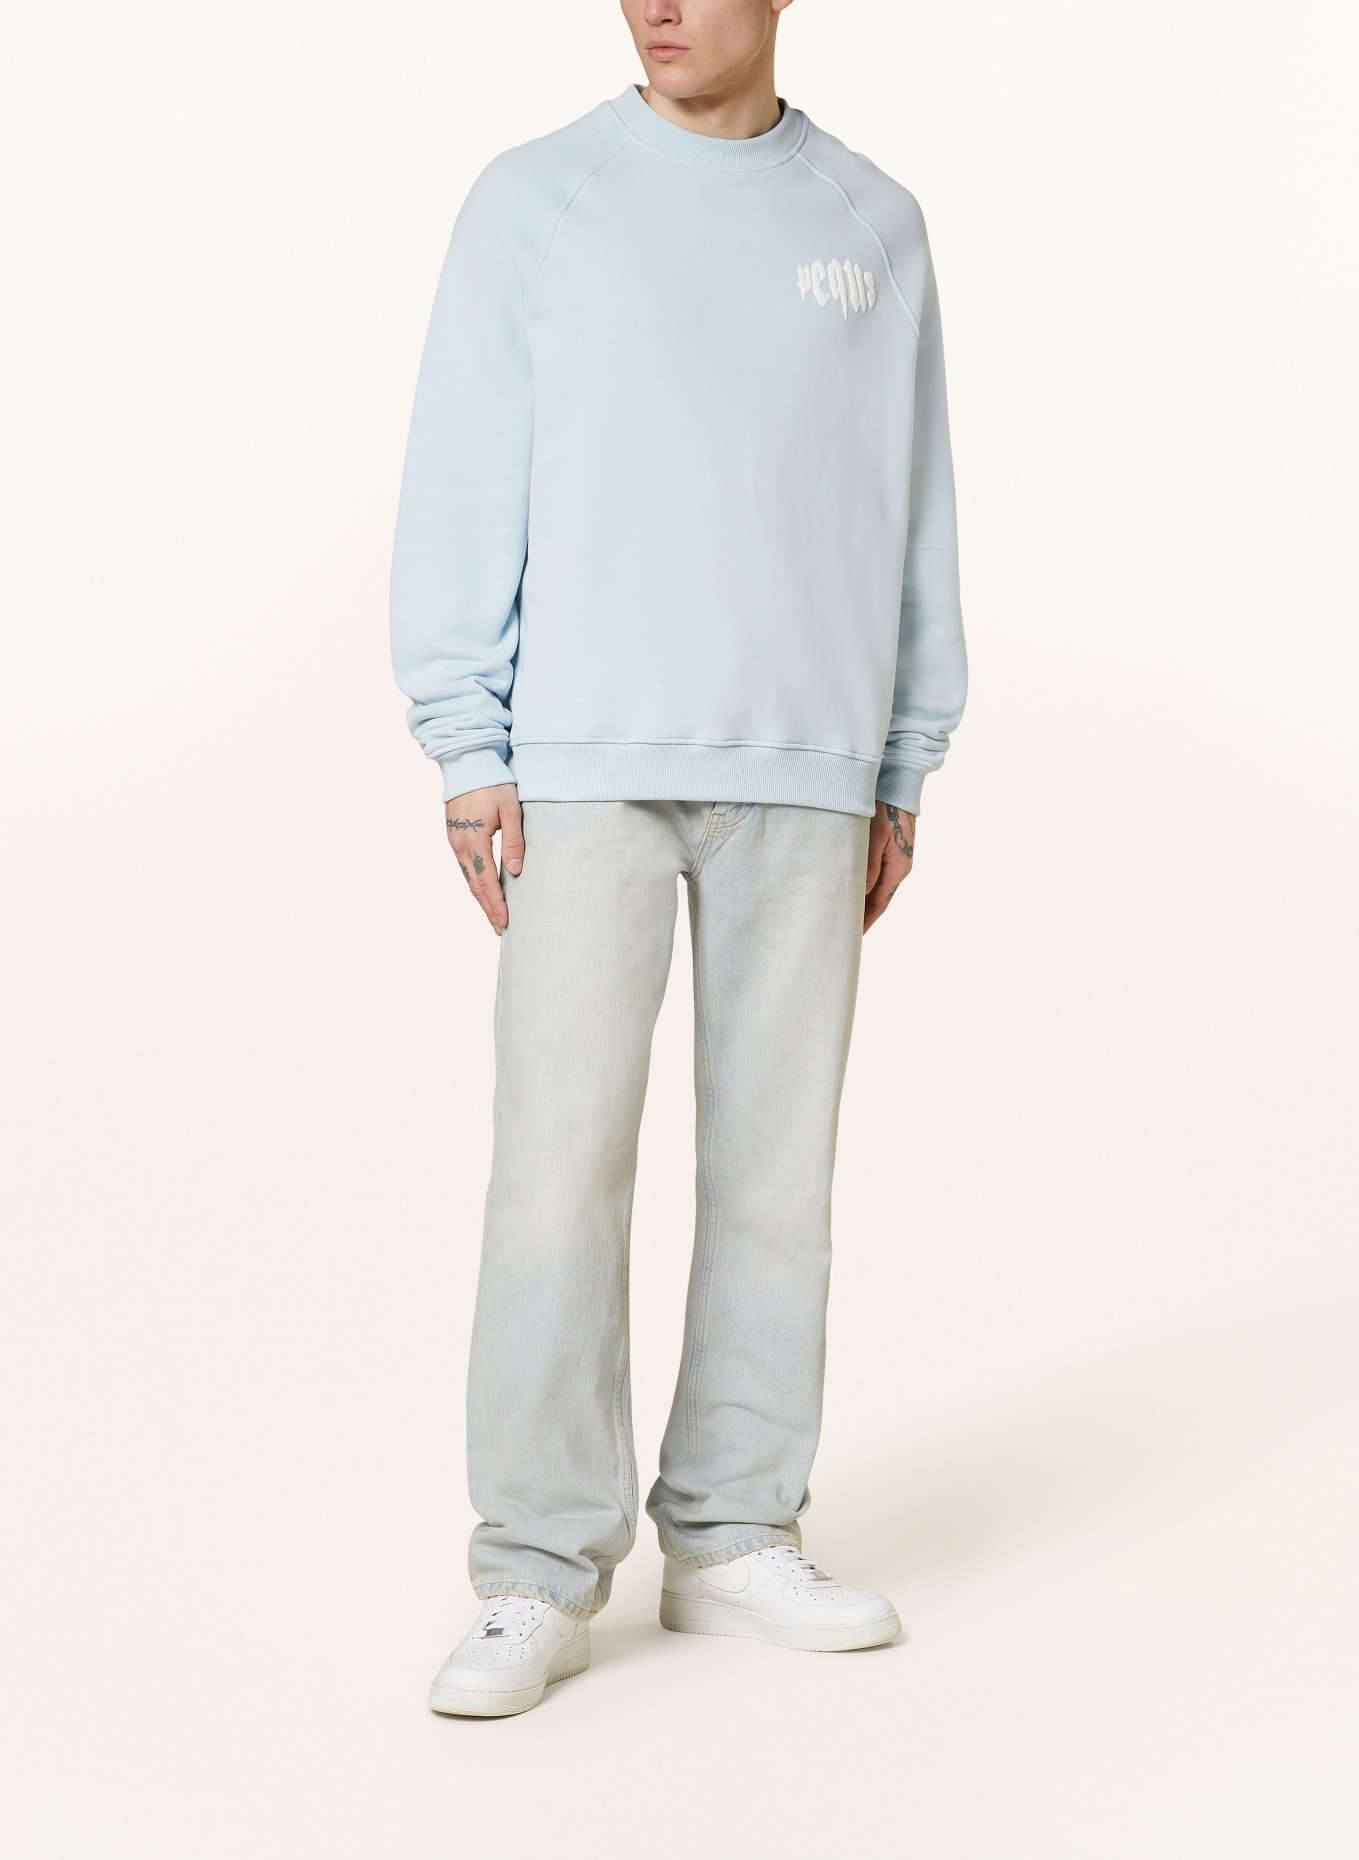 PEQUS Sweatshirt, Color: LIGHT BLUE (Image 2)